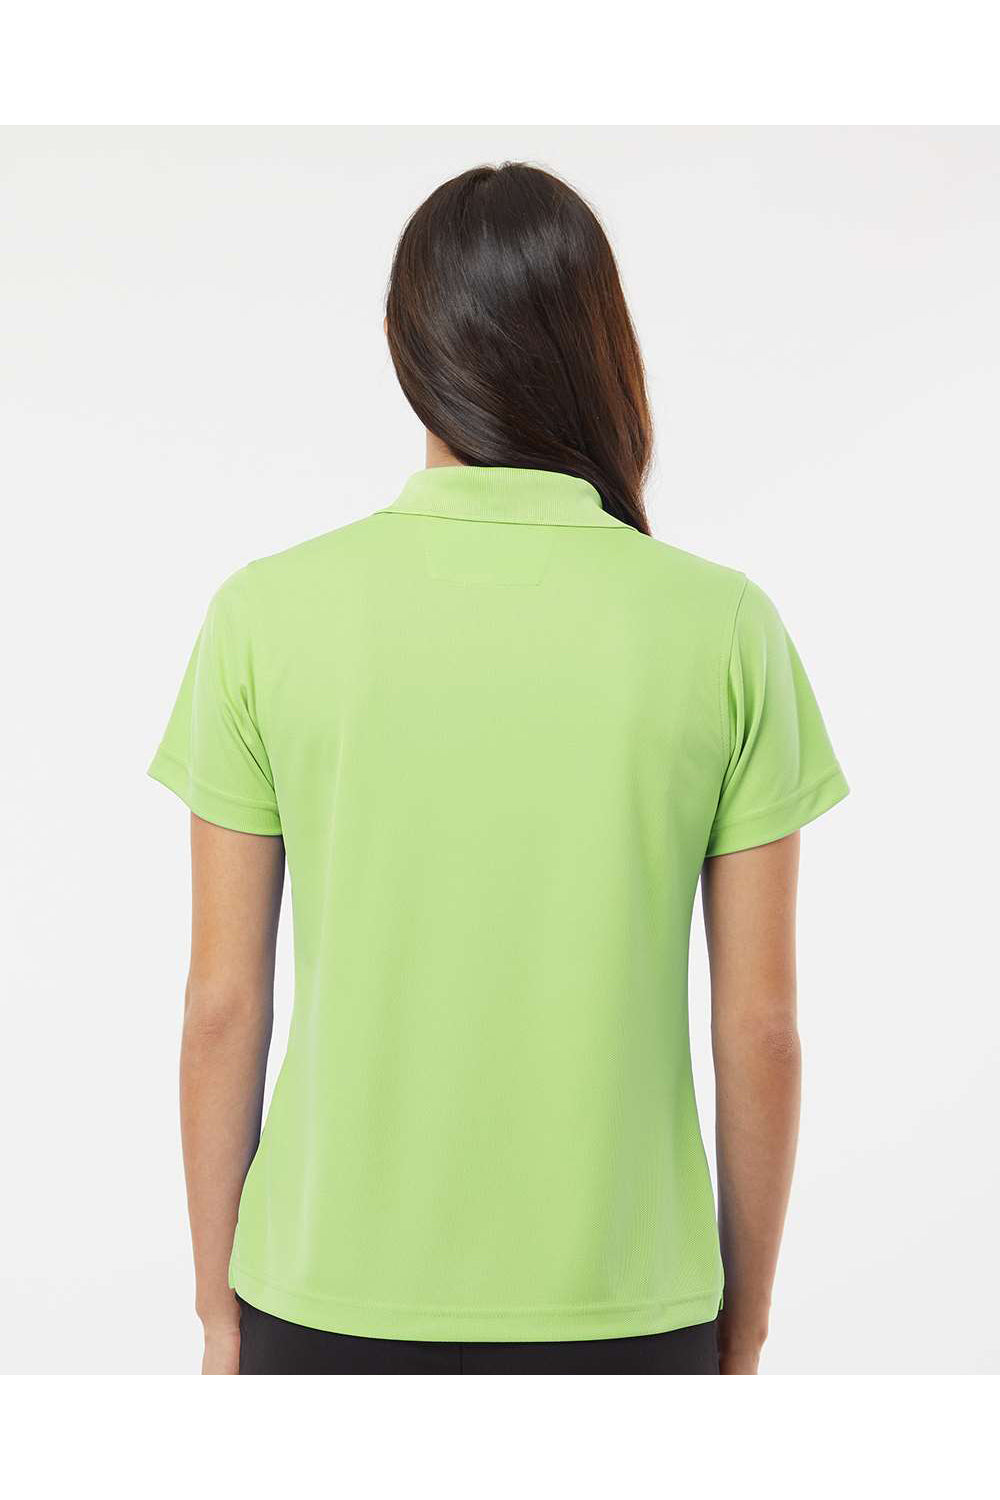 Paragon 104 Womens Saratoga Performance Mini Mesh Short Sleeve Polo Shirt Kiwi Green Model Back